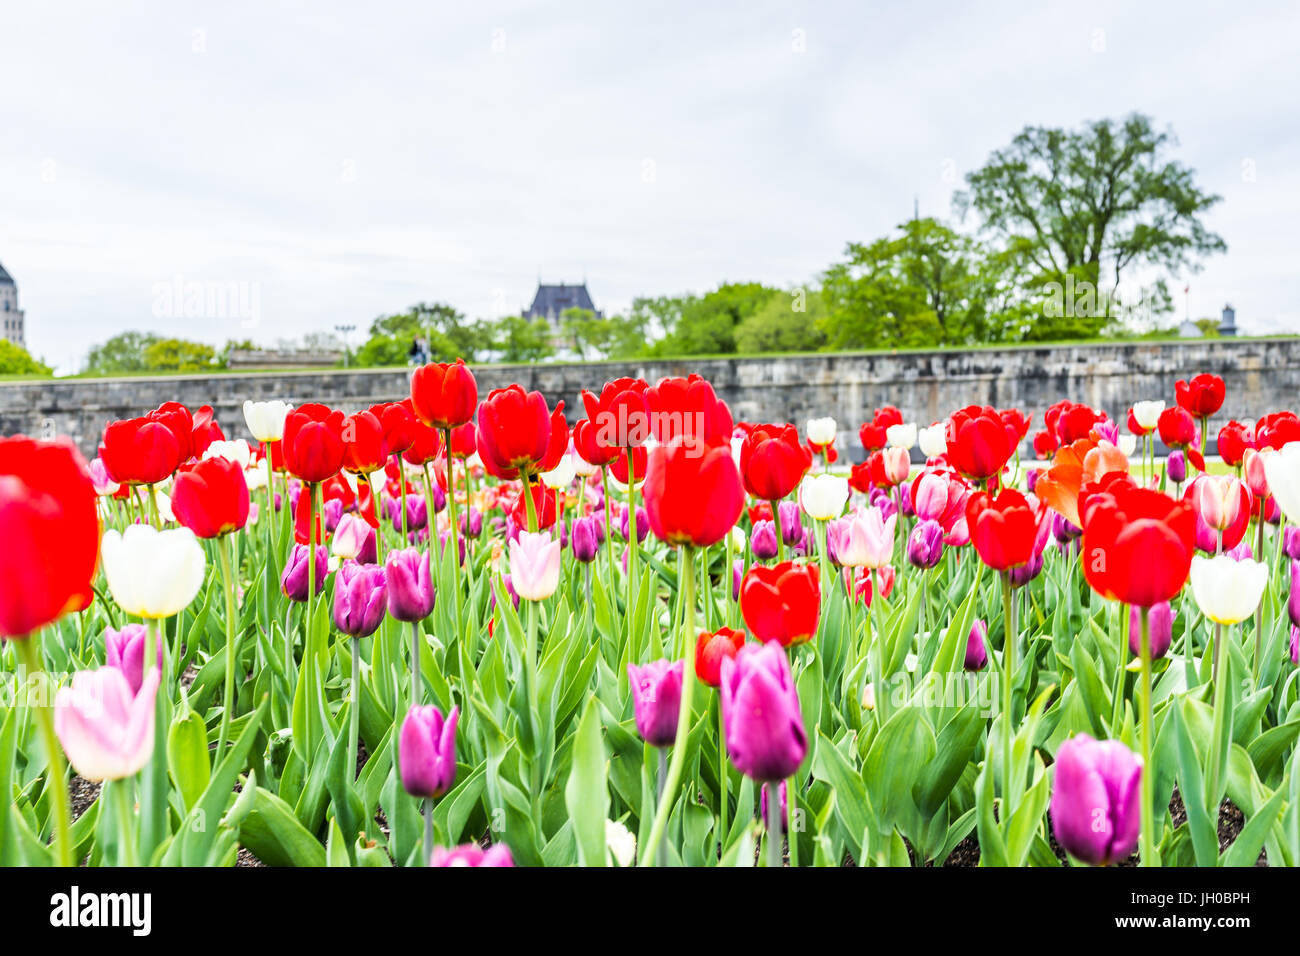 La città di Quebec, Canada - 29 Maggio 2017: Macro closeup di porpora e tulipani rossi in estate da verdi campi in erba steppe nel parco con fortificazioni wa di pietra Foto Stock